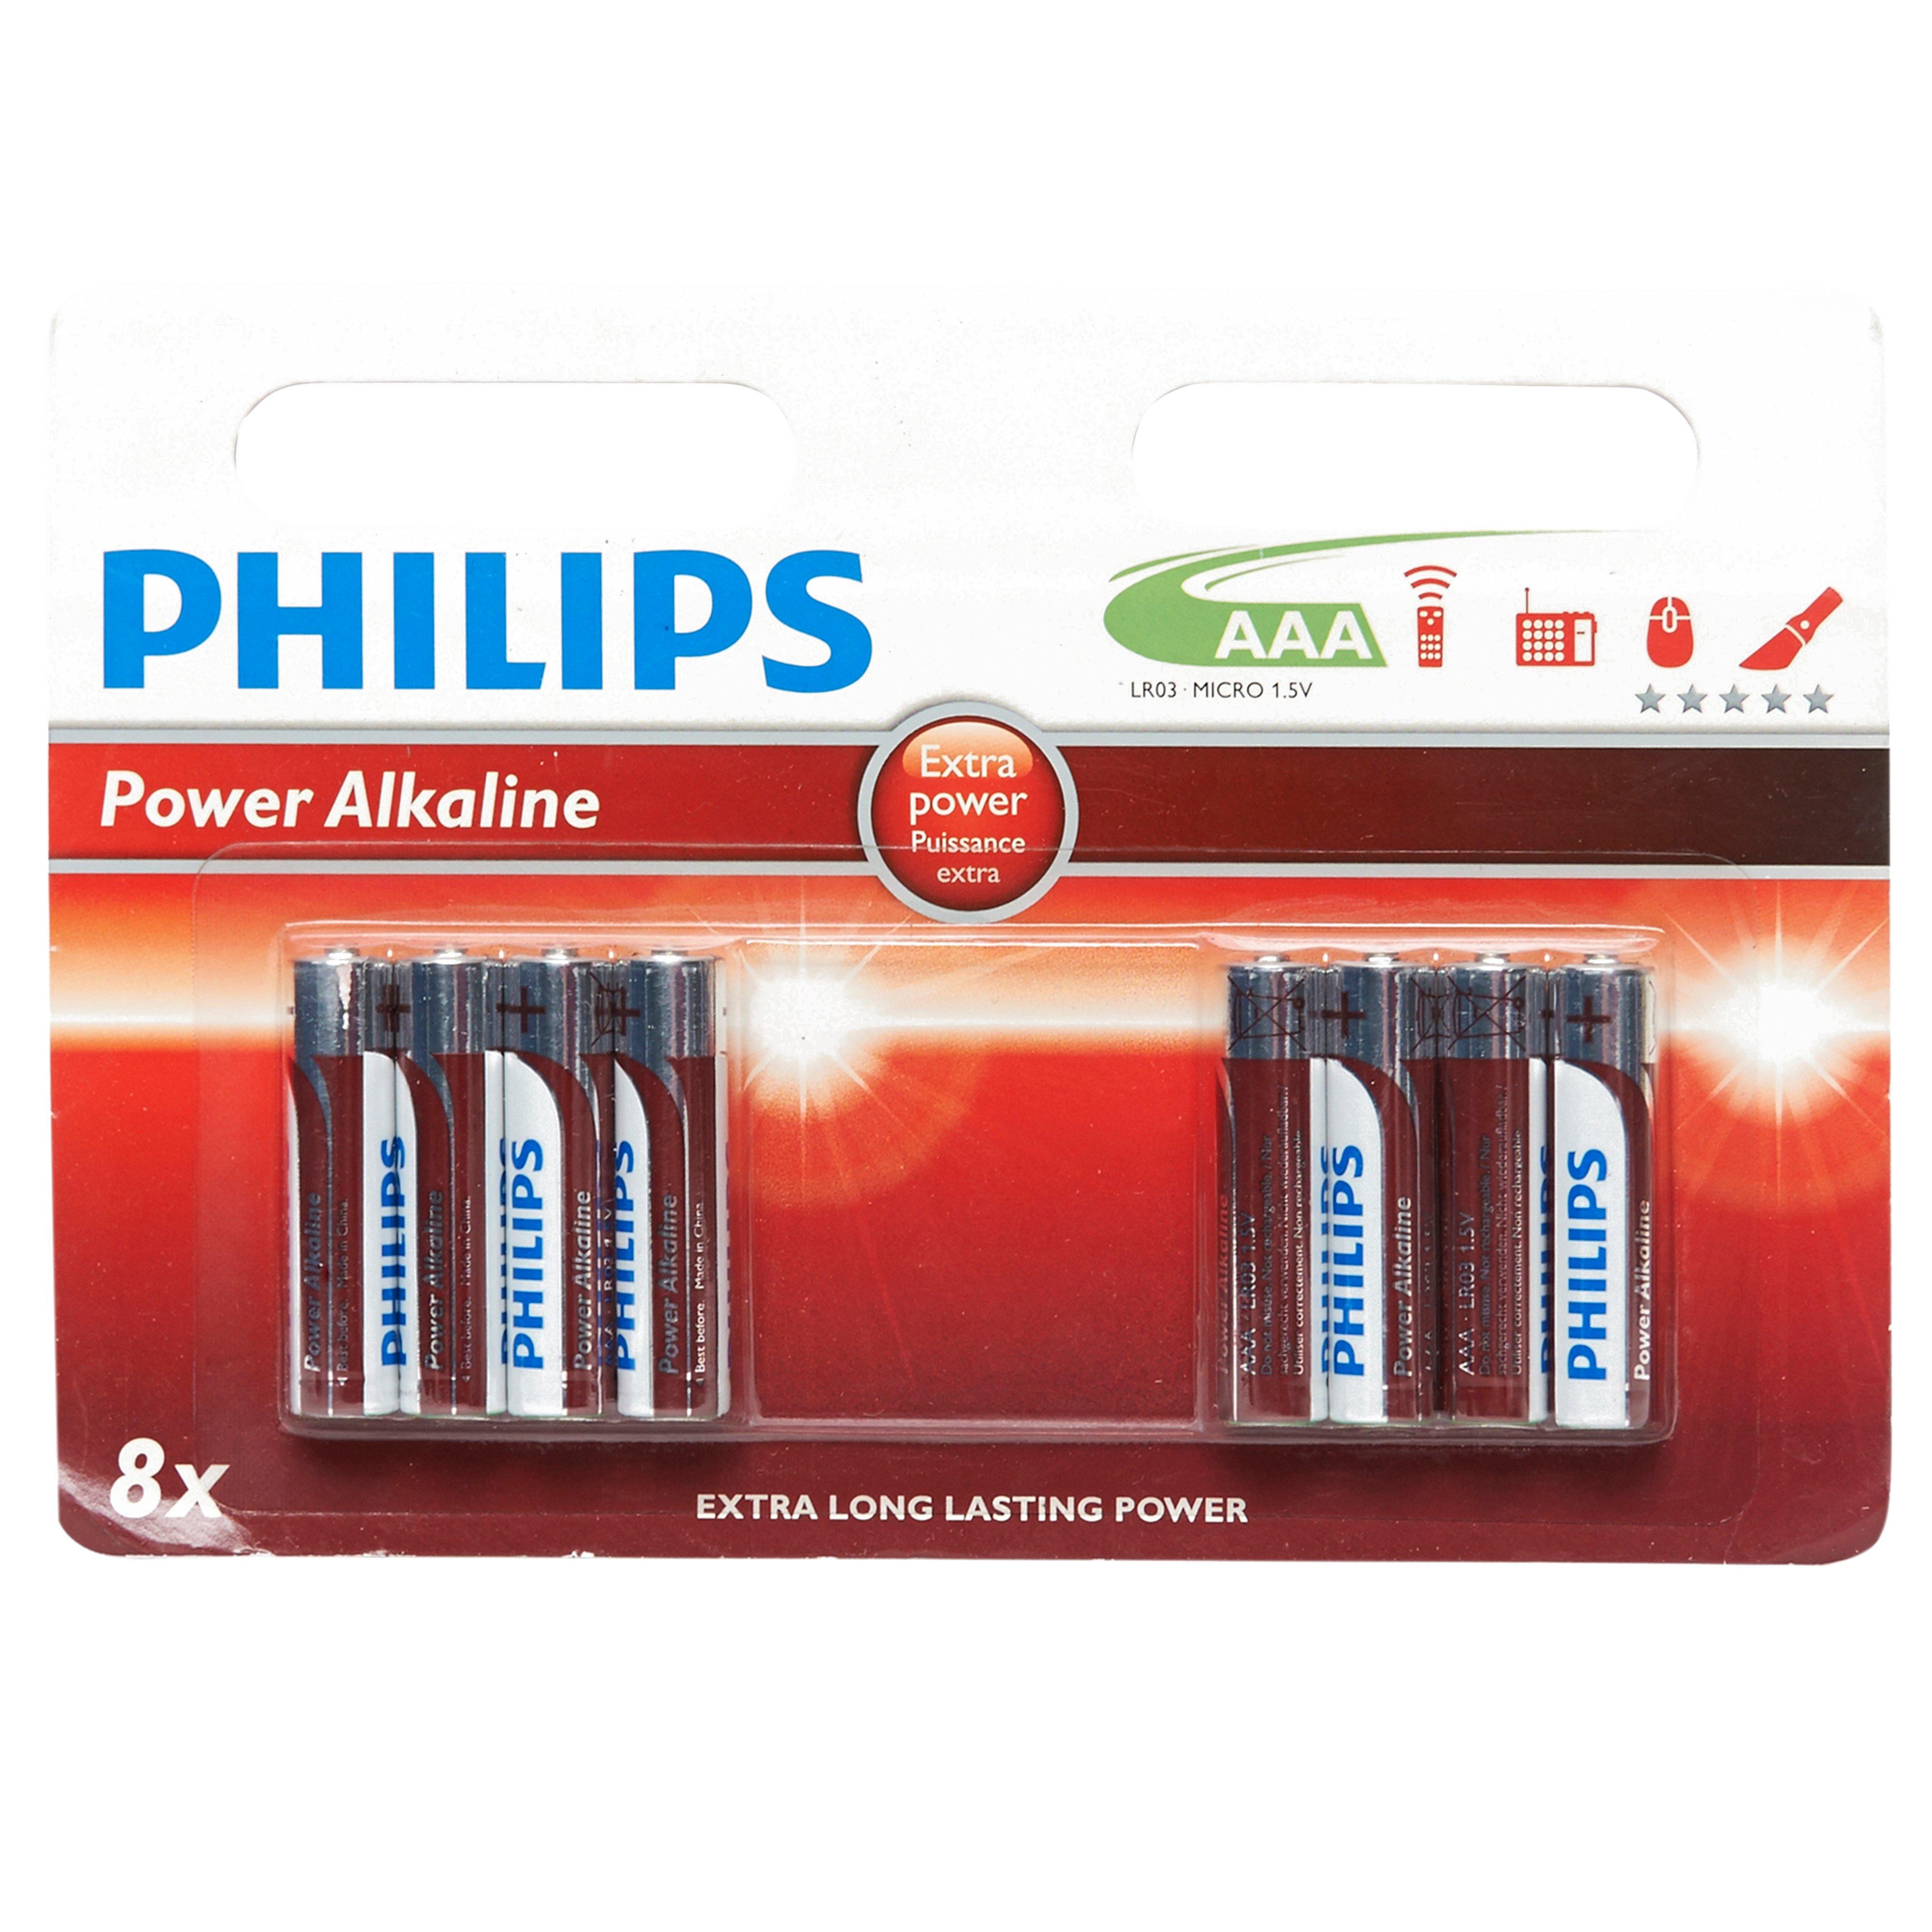 Phillips PowerLife AAA Alkaline Batteries Review